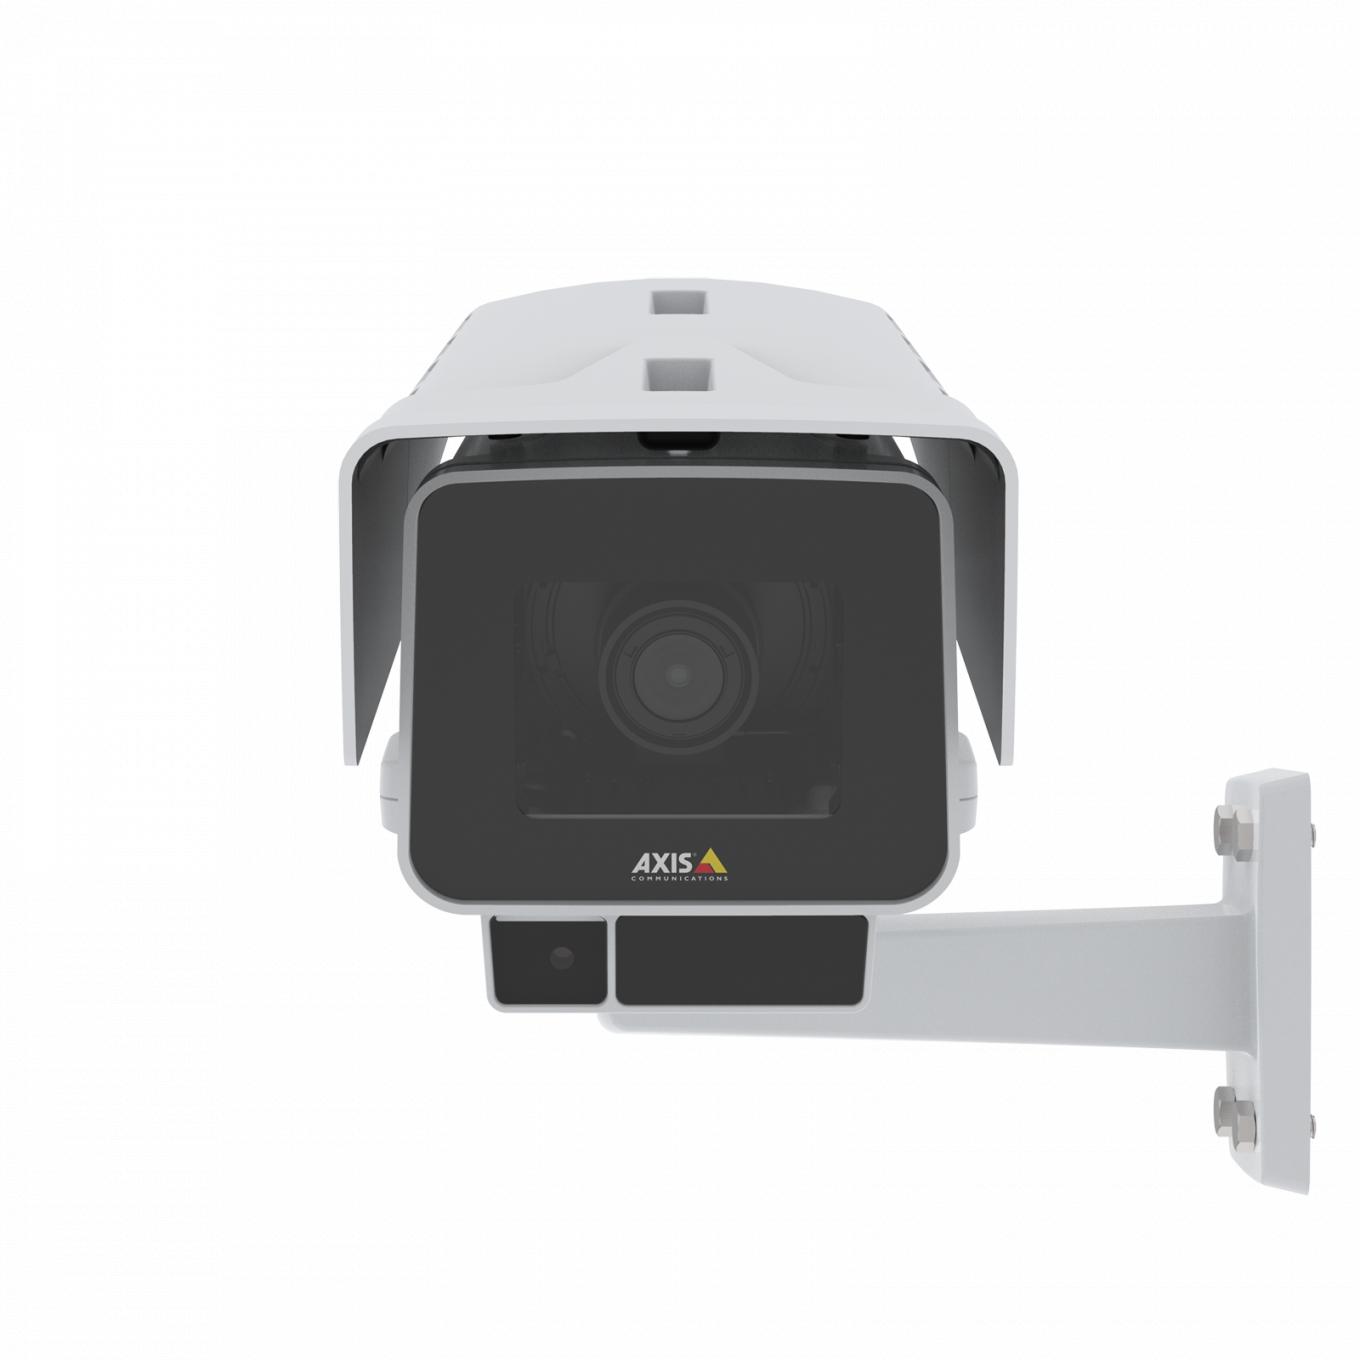 La AXIS P1377-LE IP Camera tiene OptimizedIR y Forensic WDR. El producto se muestra con vista frontal.